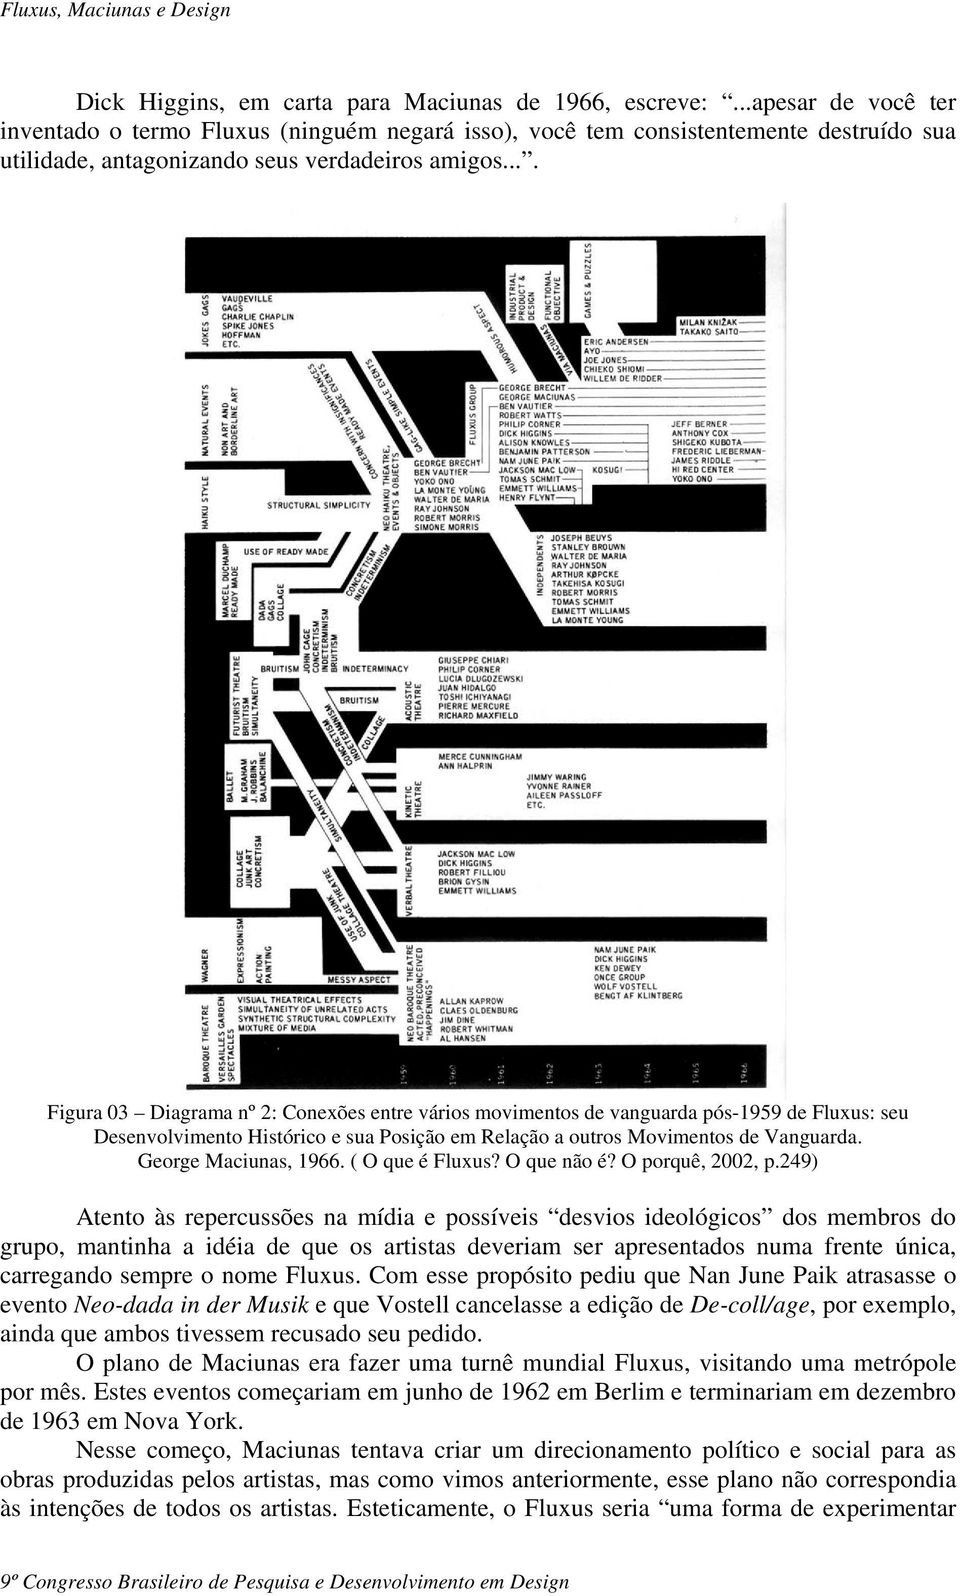 ... Figura 03 Diagrama nº 2: Conexões entre vários movimentos de vanguarda pós-1959 de Fluxus: seu Desenvolvimento Histórico e sua Posição em Relação a outros Movimentos de Vanguarda.